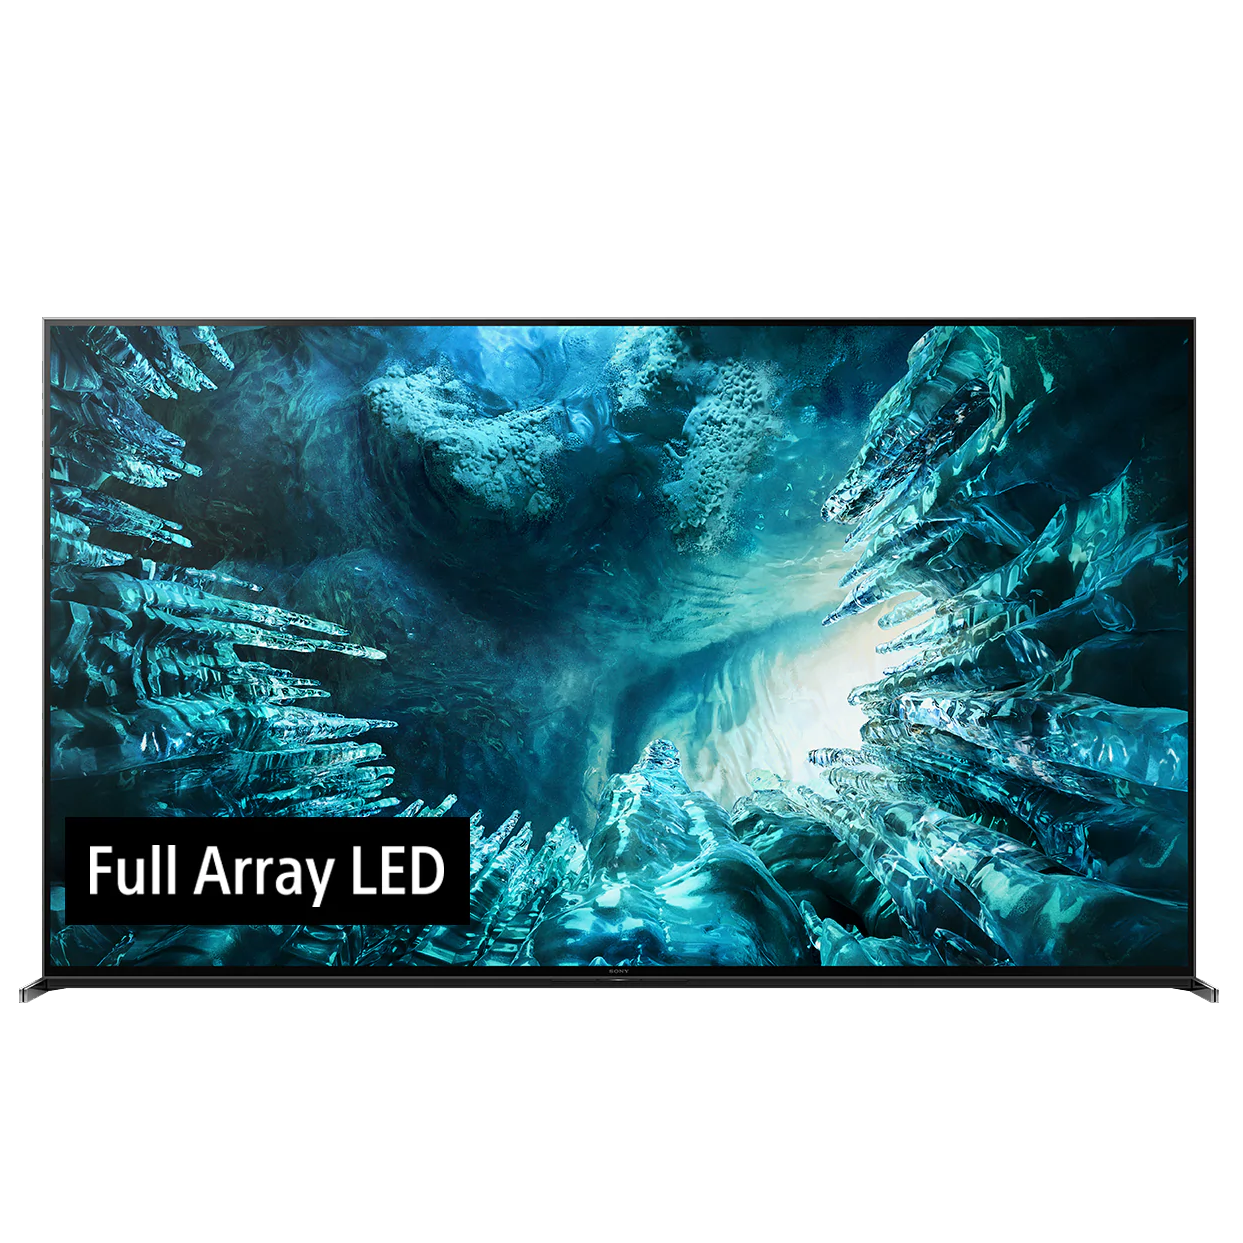 Smart TV Sonny 85 inch Z8H 8K Full Array LED X-tended Dynamic Range PRO X1™ Ultimate